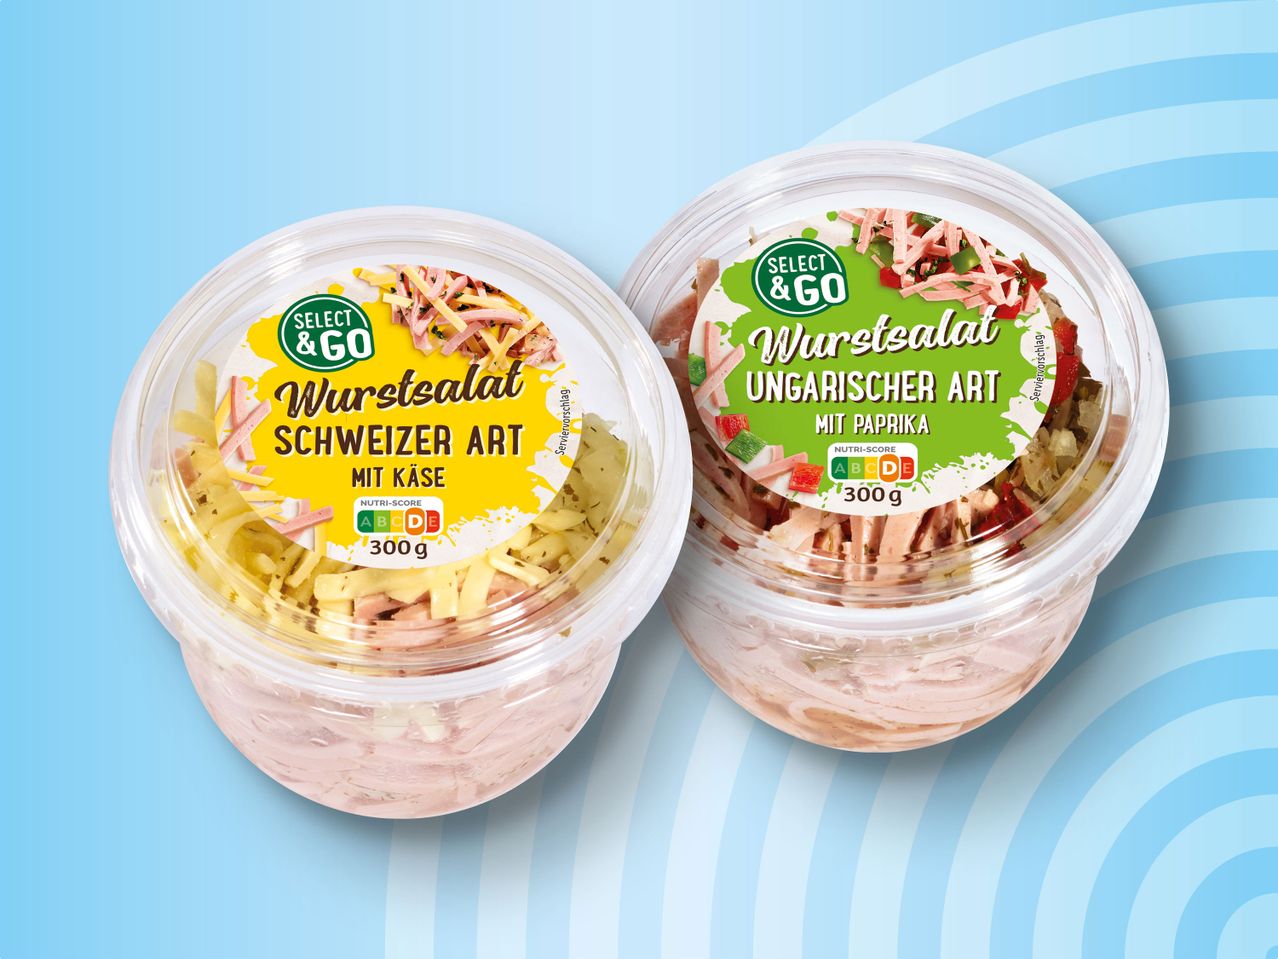 Select & Go Wurstsalat im Becher